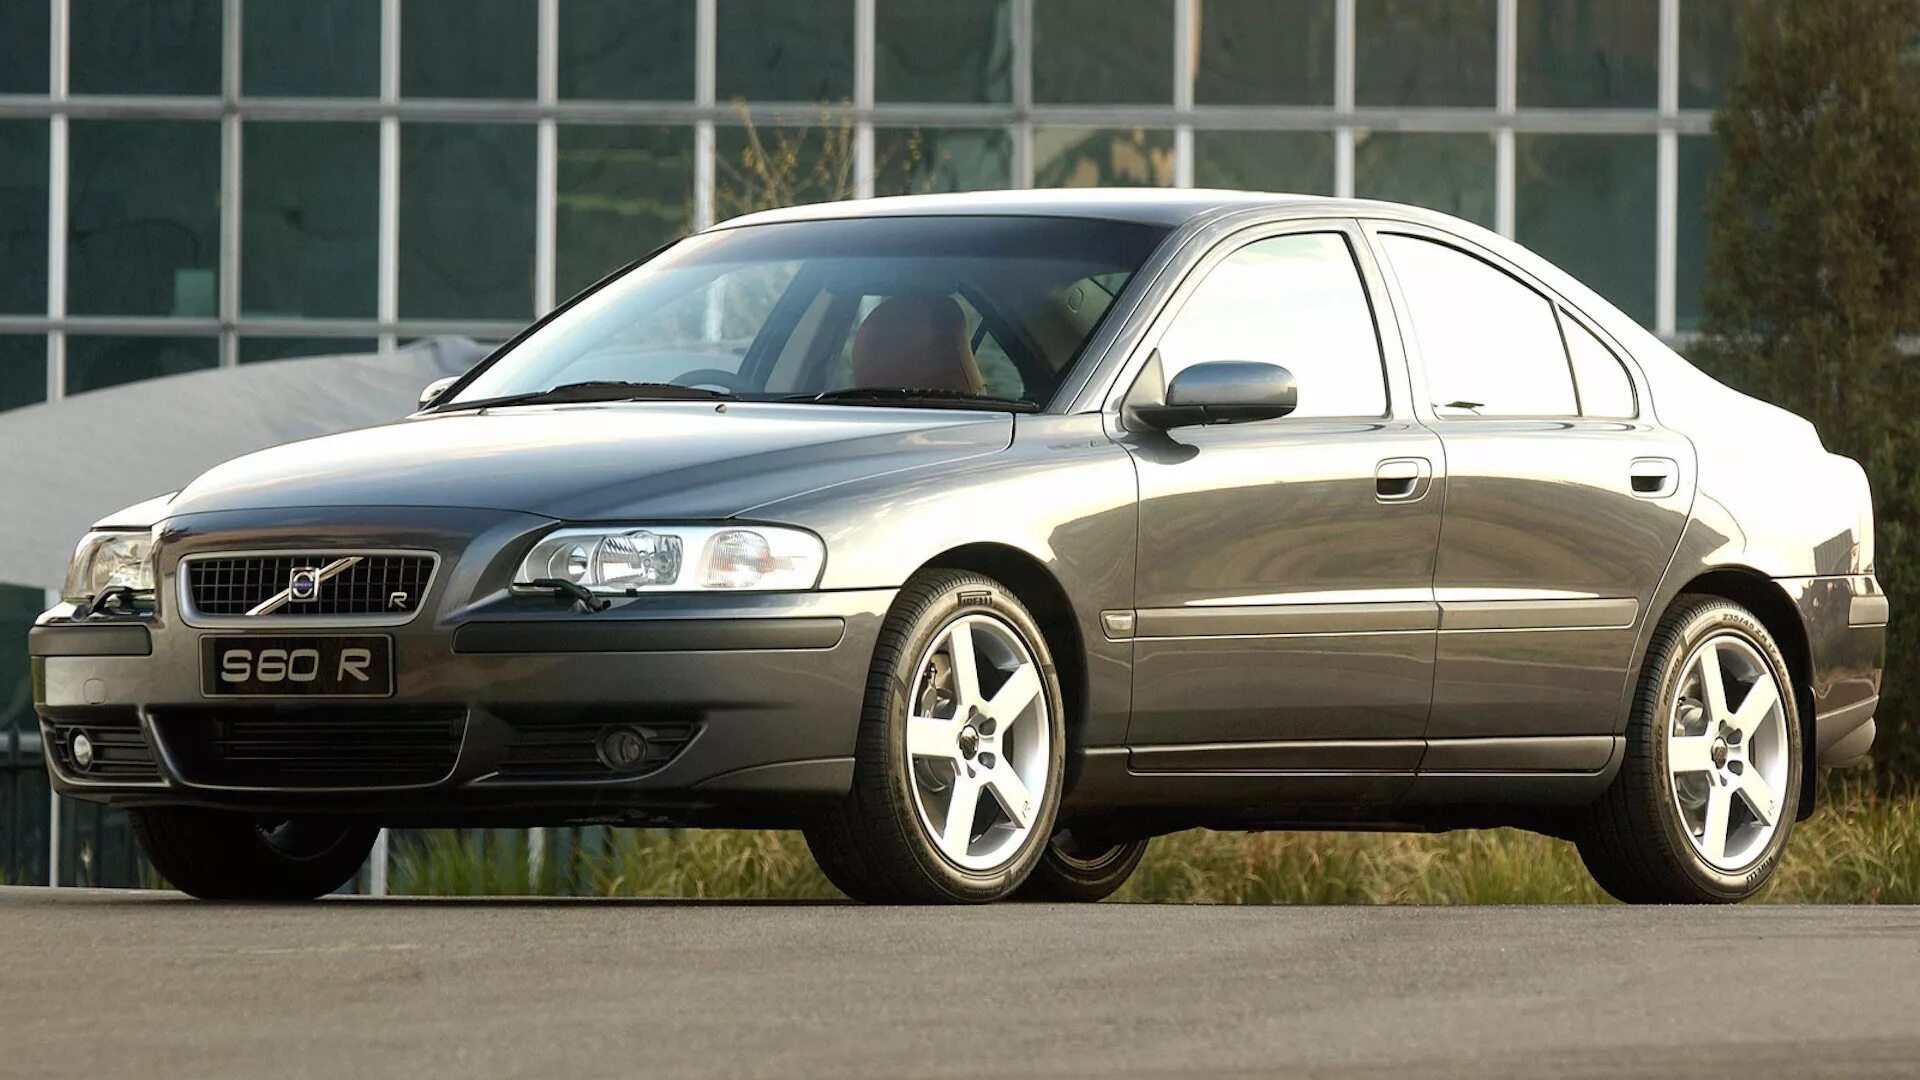 Volvo s60 2004. Volvo s60 r 2004. Вольво s60 2004. Volvo s60 2003.